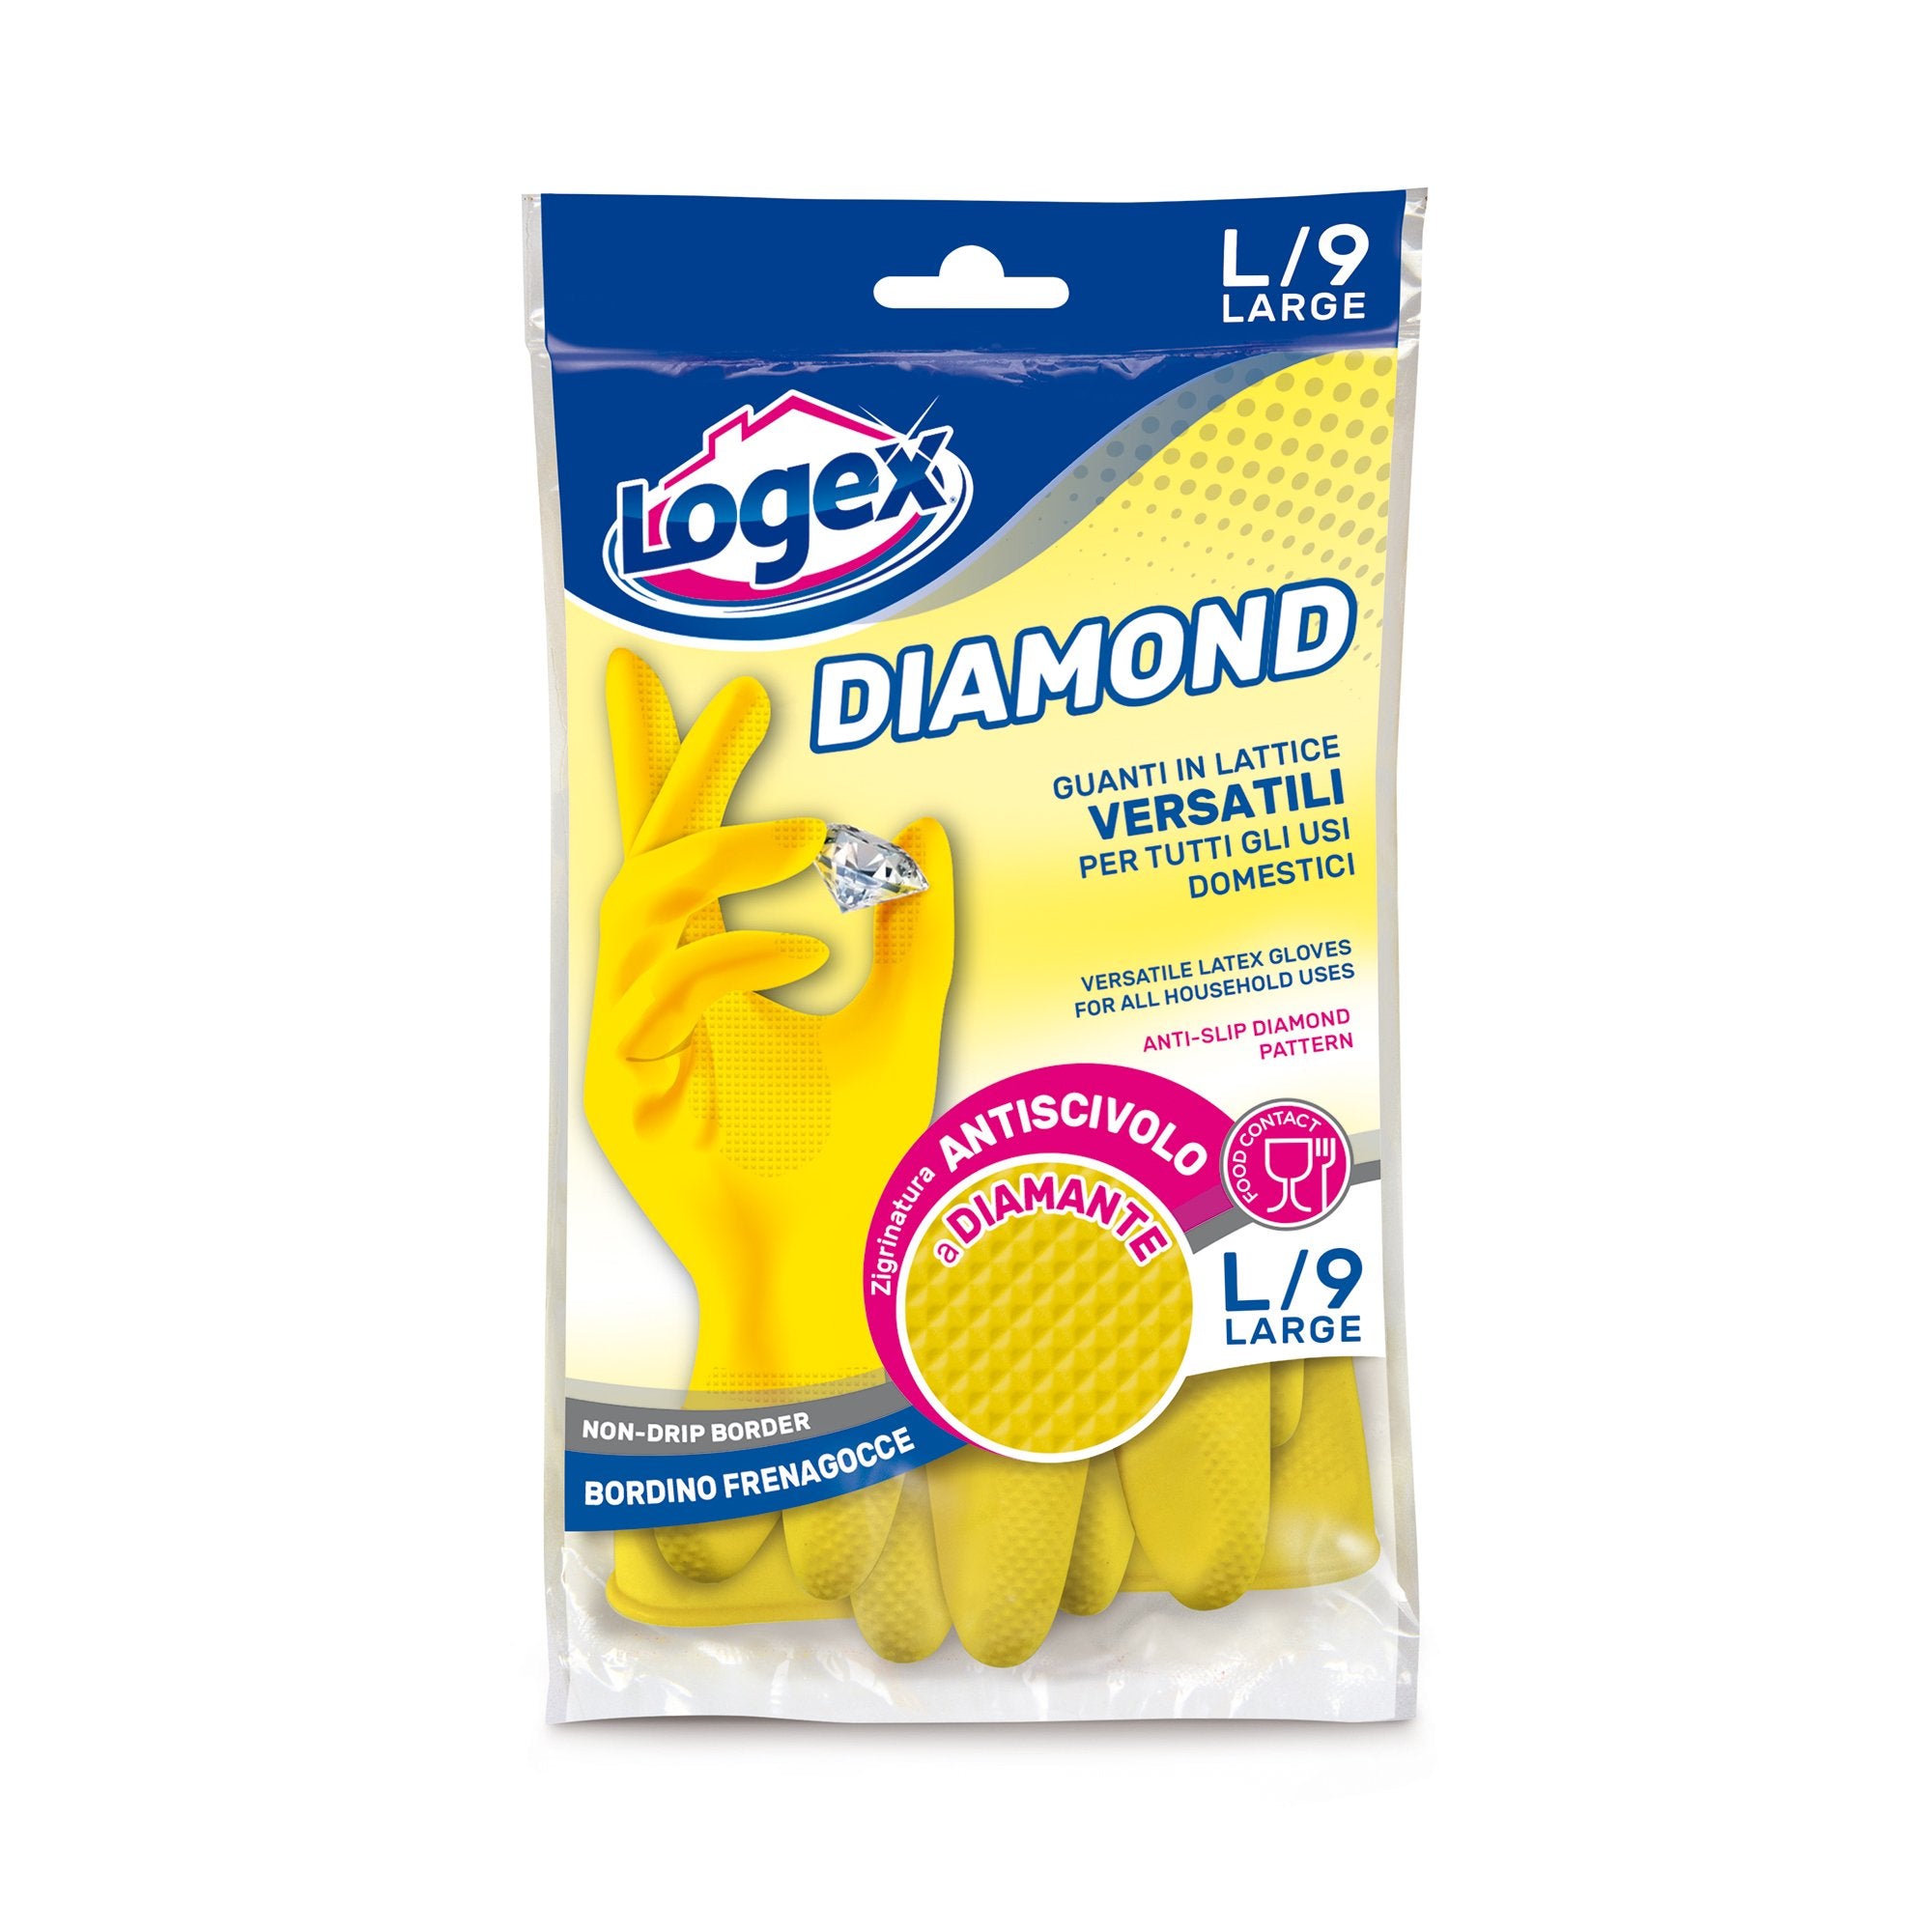 logex-professional-guanti-lattice-diamond-tg-l-giallo